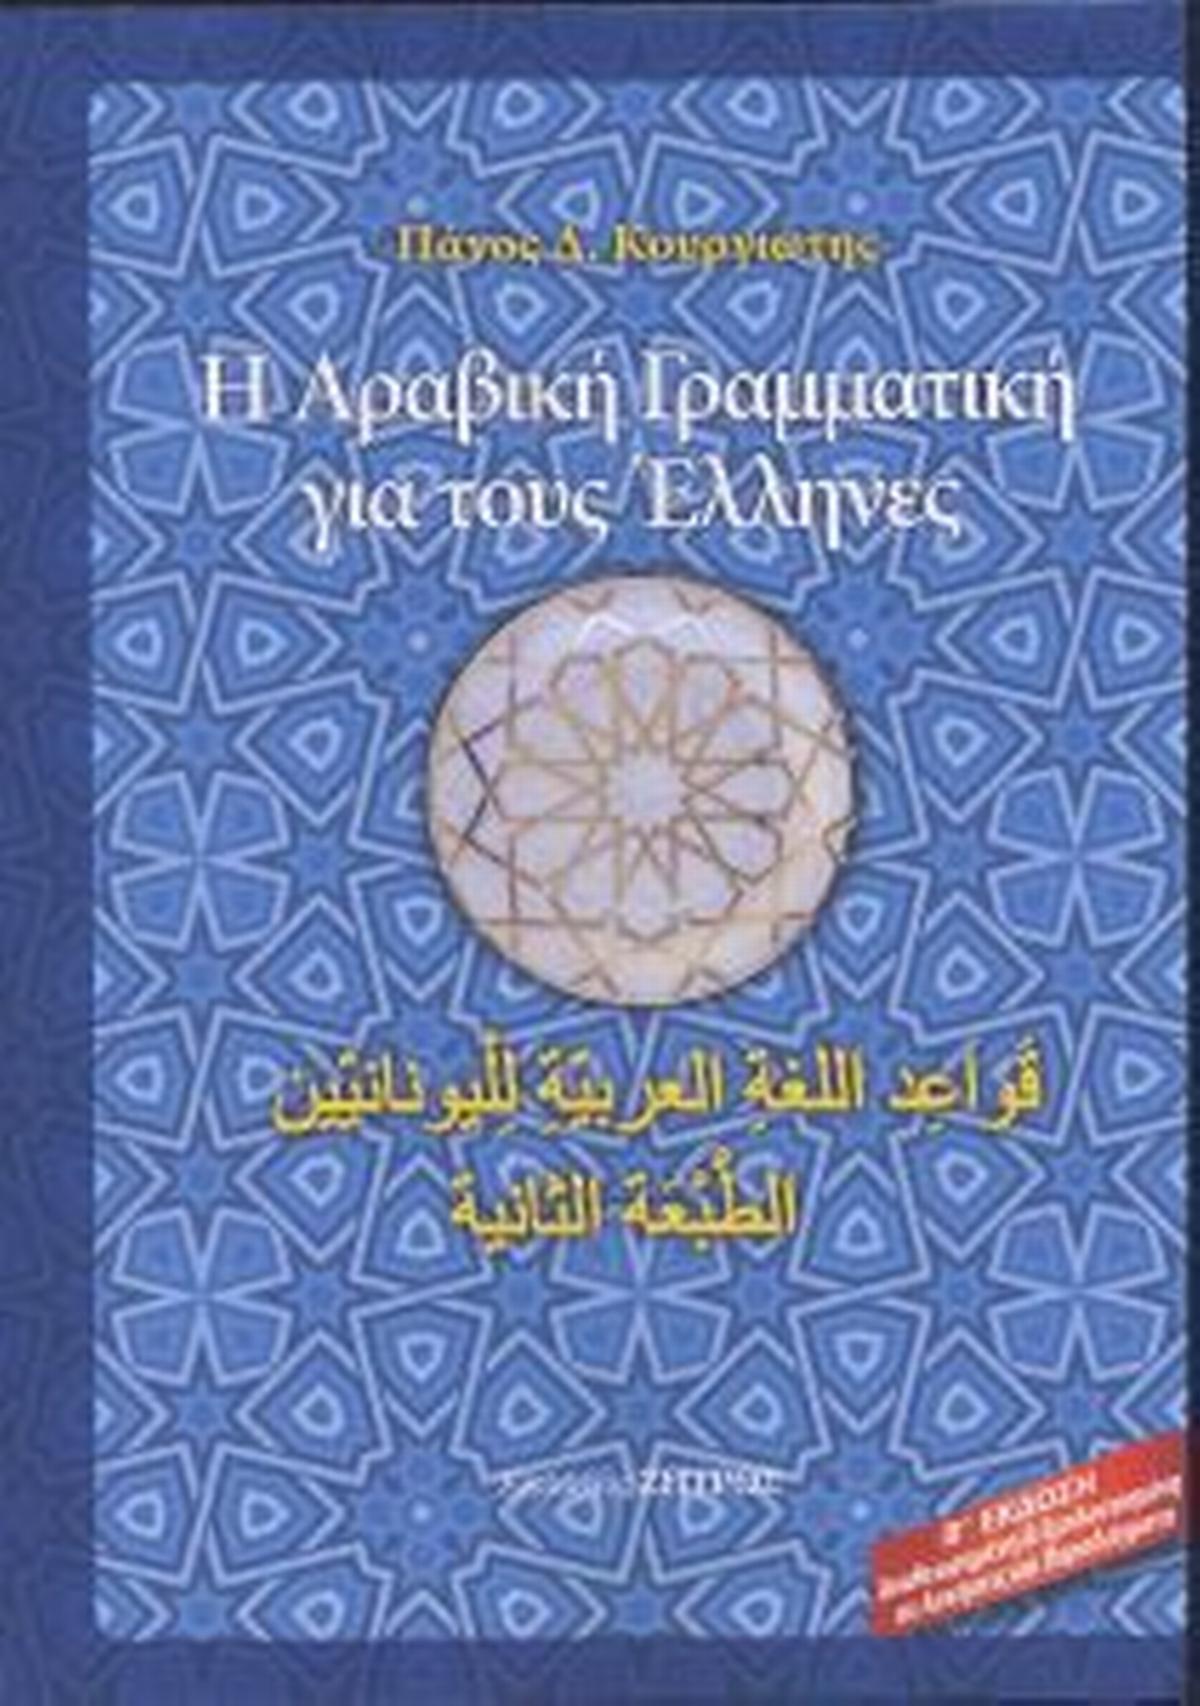 Η αραβική γραμματική για τους Έλληνες (Β΄έκδοση)